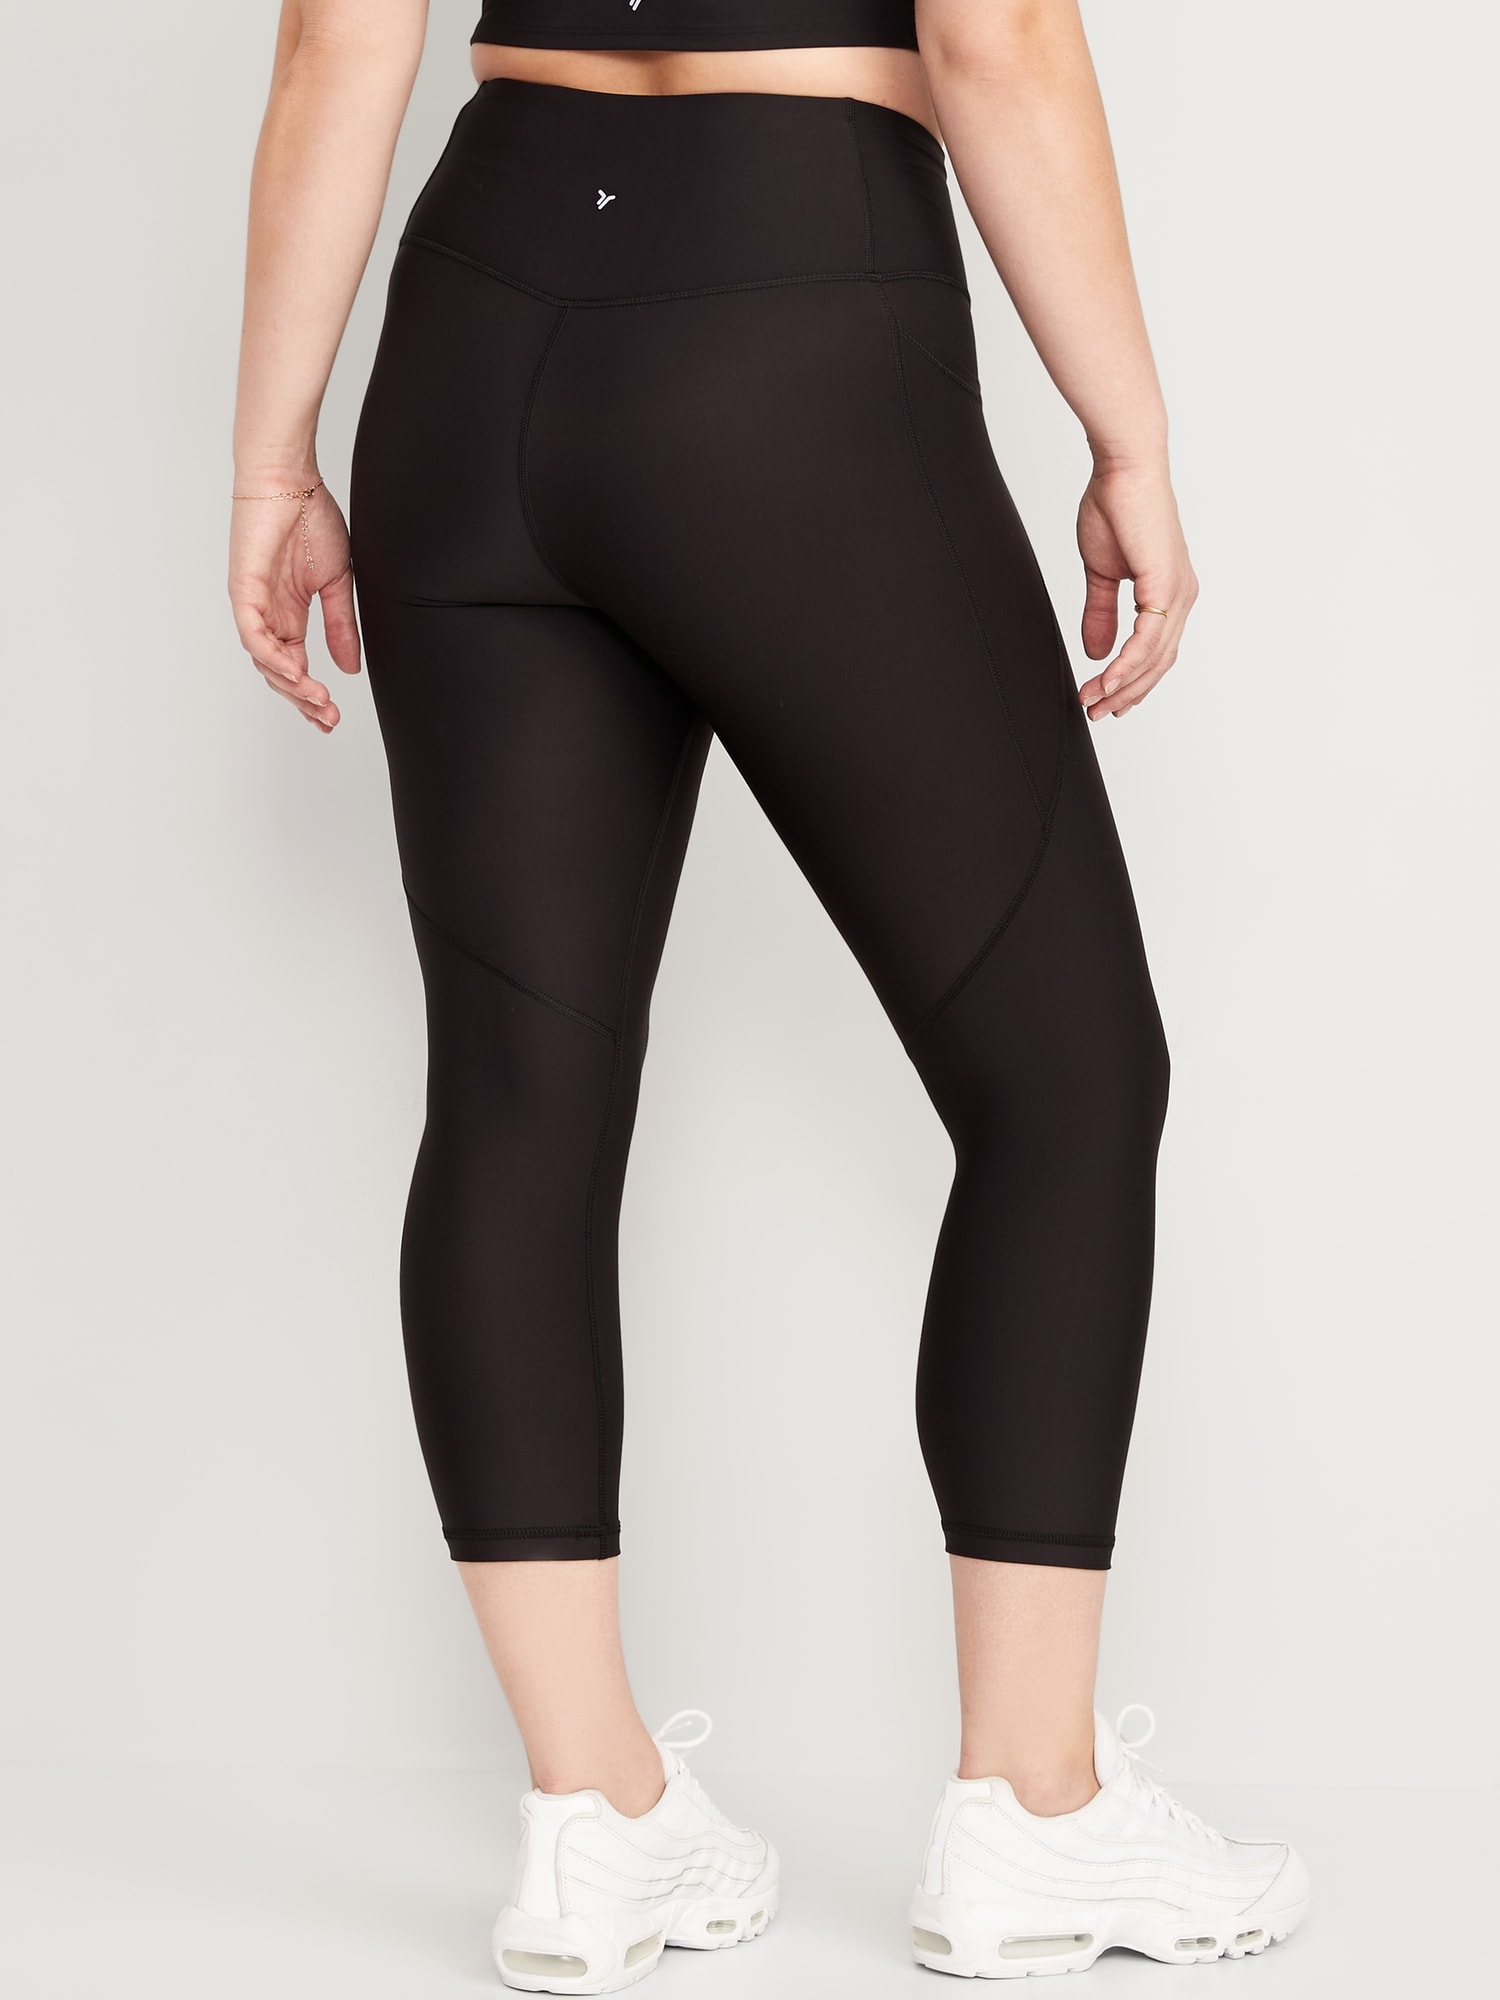 Pants & Jumpsuits, Lululemon Align Crop 21 Black Size 12